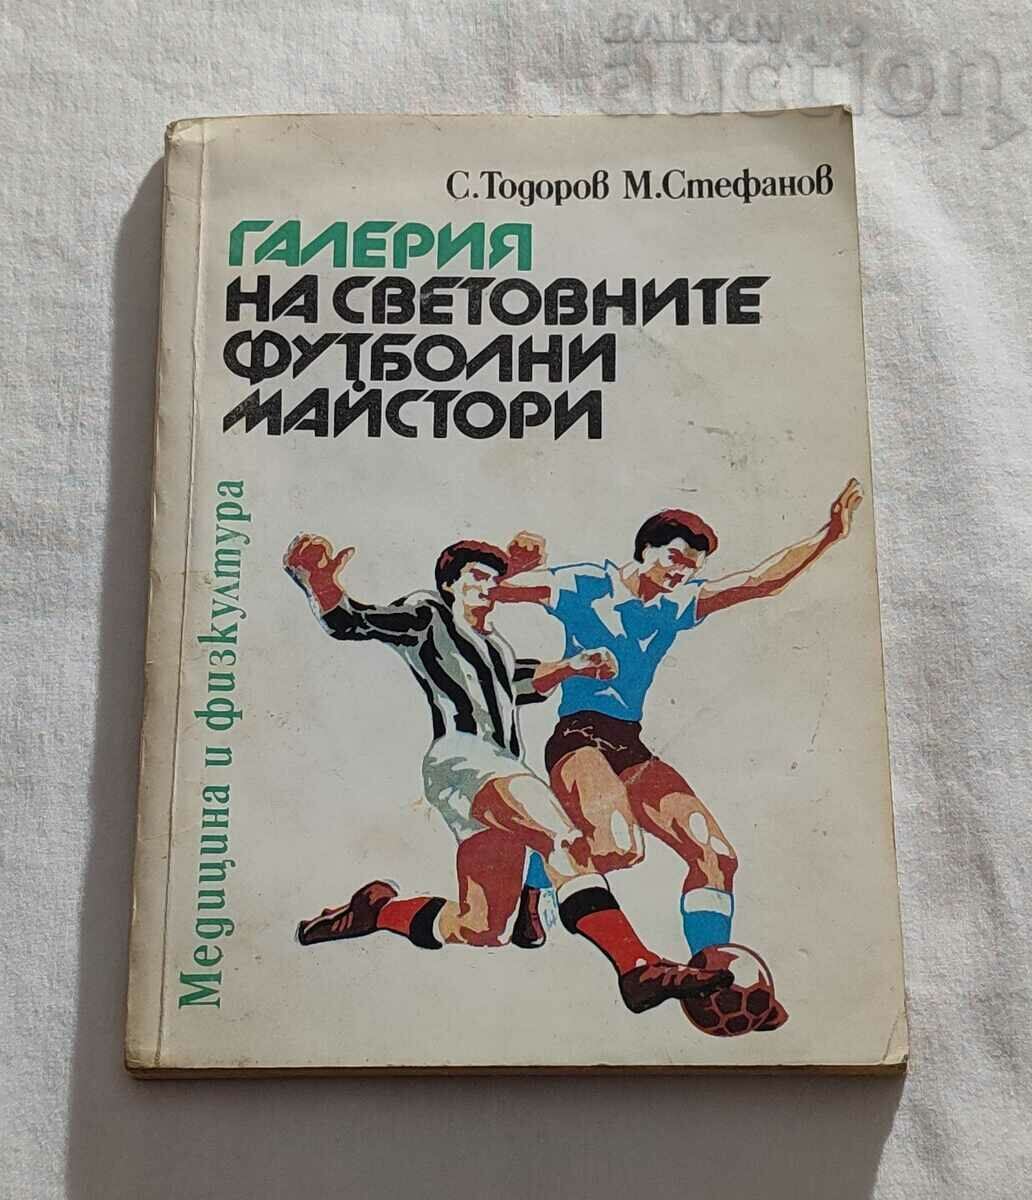 GALLERY OF WORLD FOOTBALL MASTERS TODOROV/STEFANOV